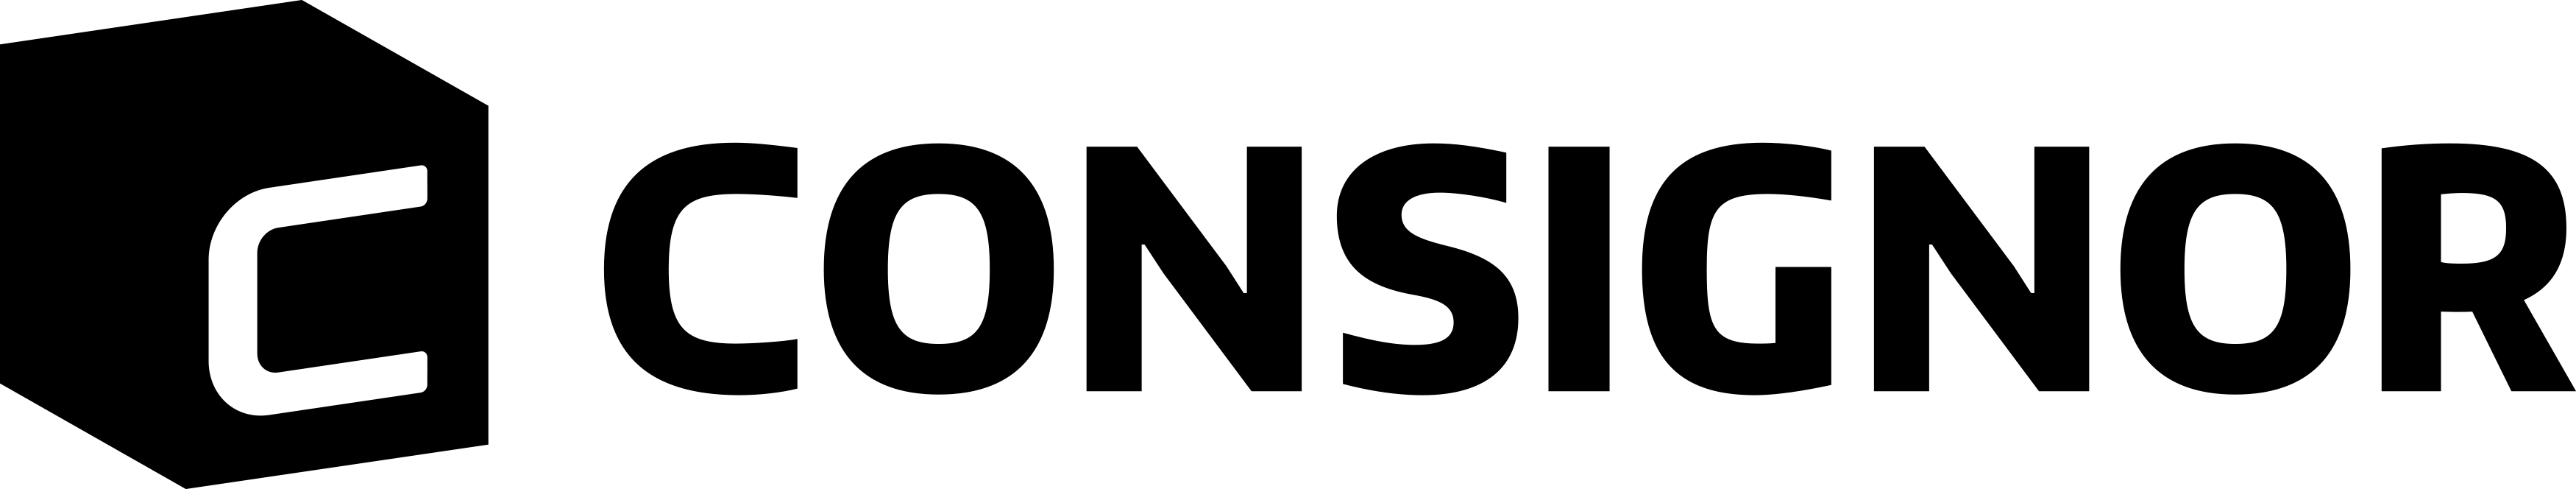 Consignor logo